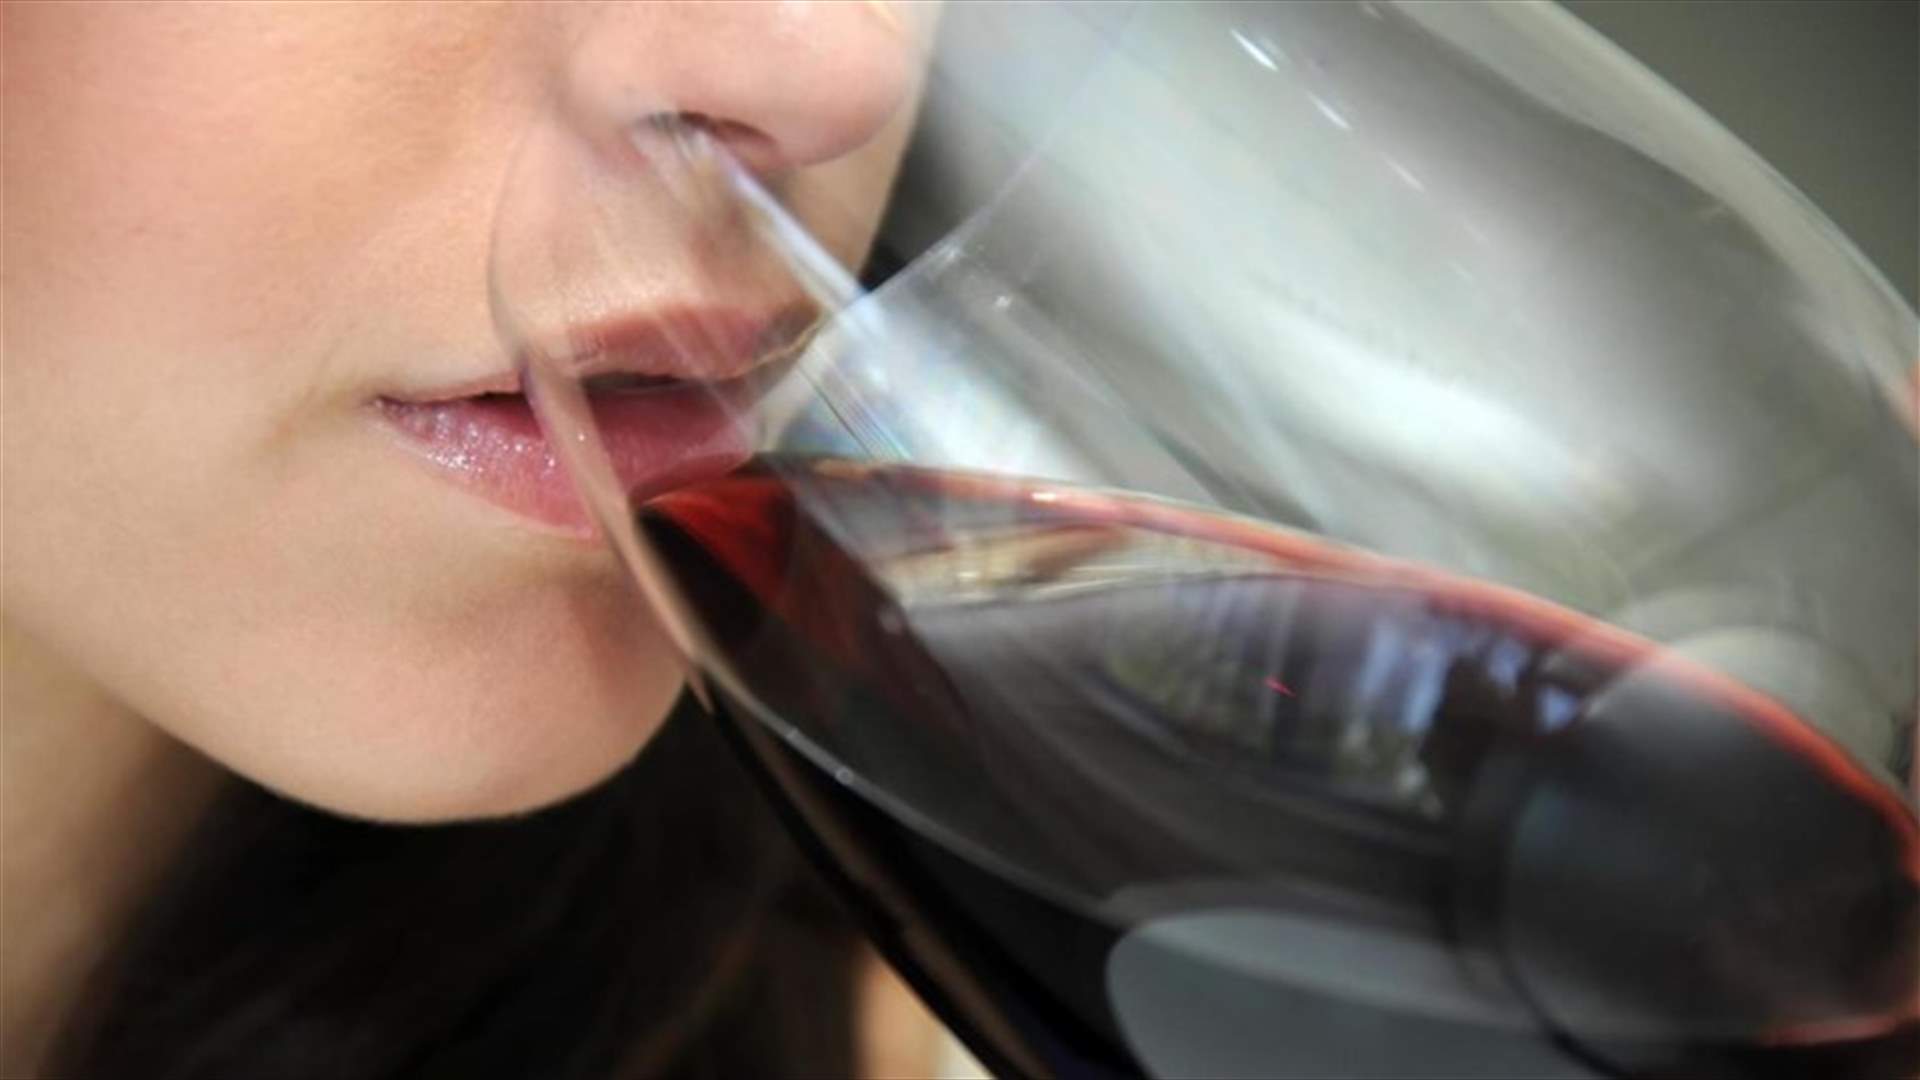 Drinking Red Wine Boosts Fertility In Women - Study